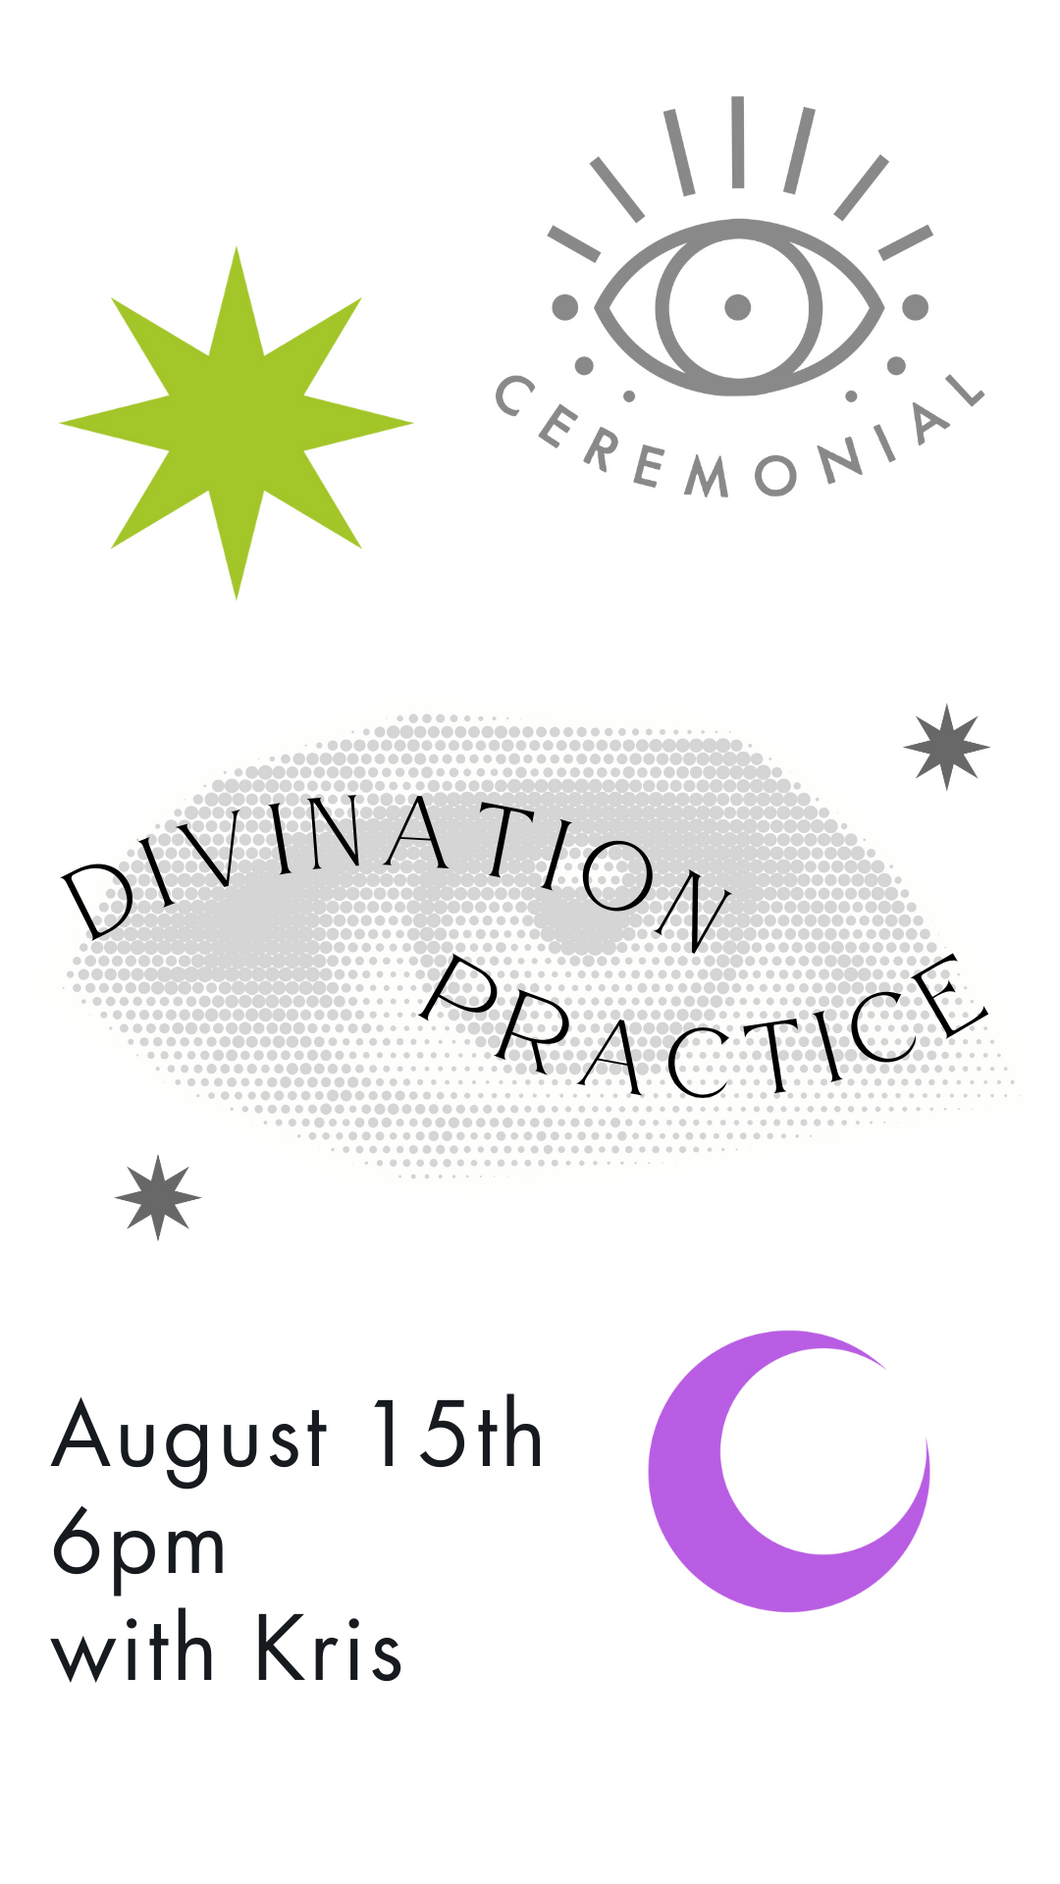 Divination Practice * Thursday, August 15th 6pm